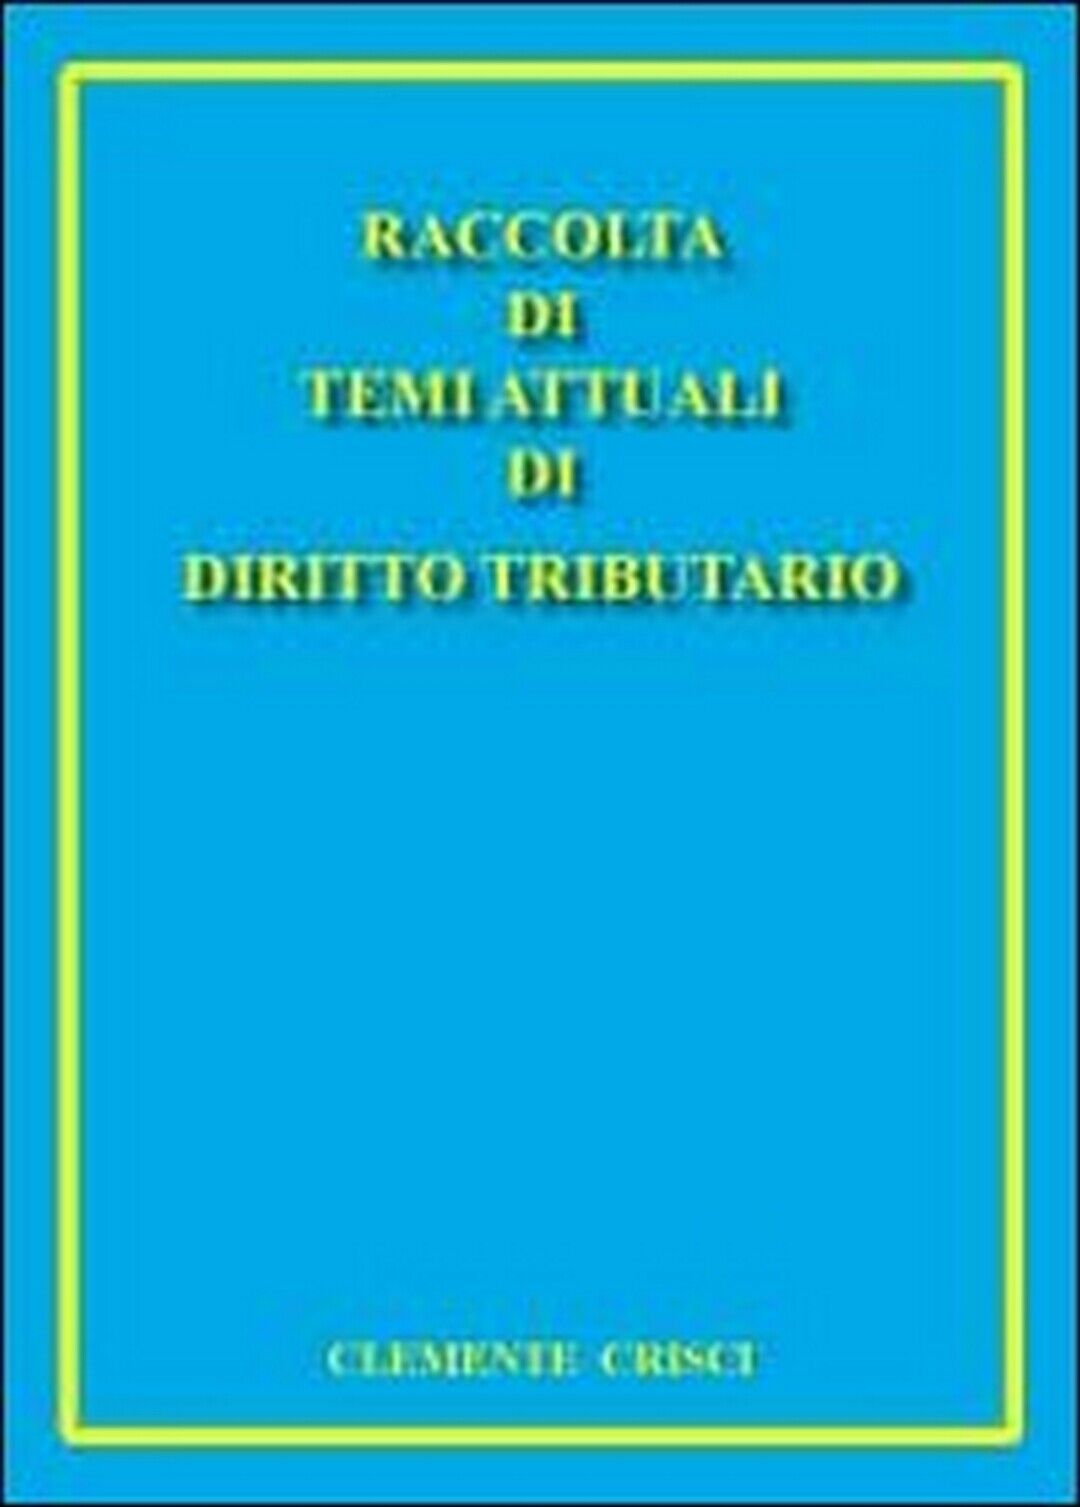 Raccolta di temi attuali di diritto tributario, di Clemente Crisci,  2011